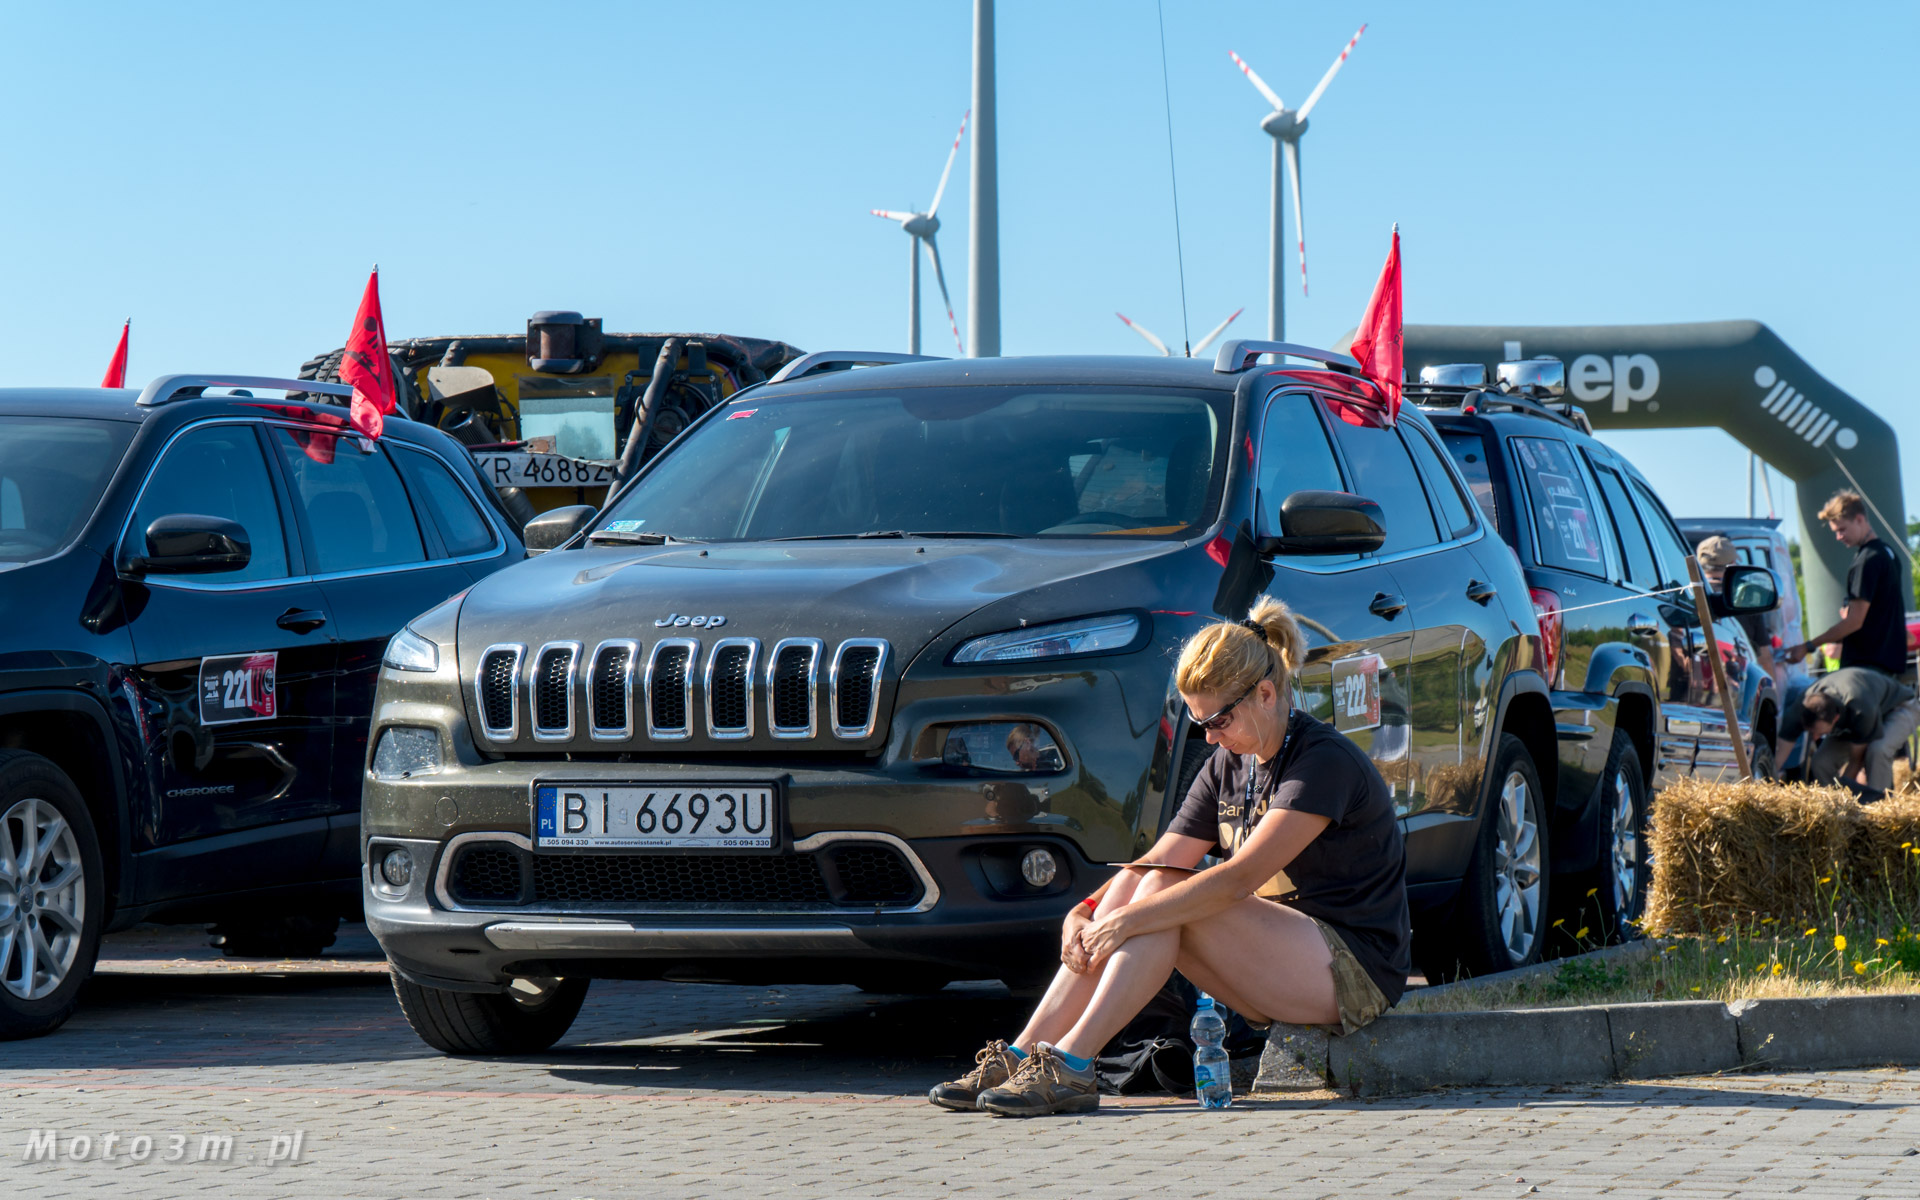 Camp Jeep 2018 Kaszuby w Gniewinie Moto3m.pl